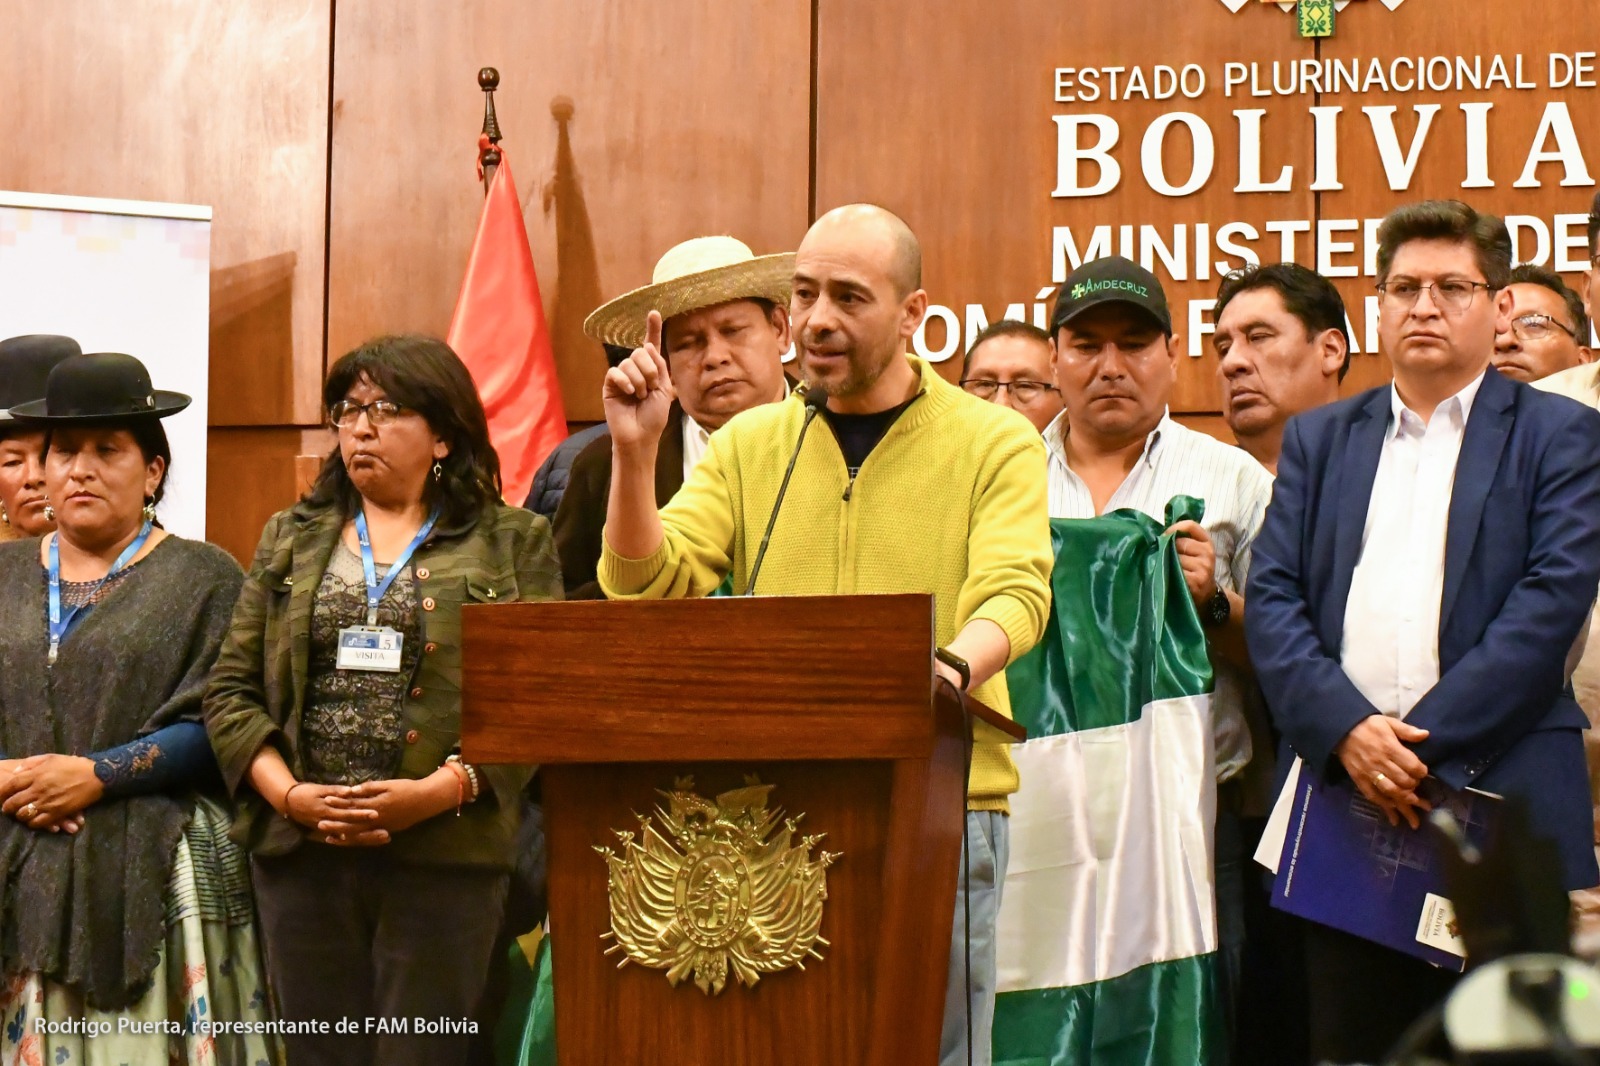 Atentar contra la economía es priorizando lo político sobre el bienestar de las familias bolivianas